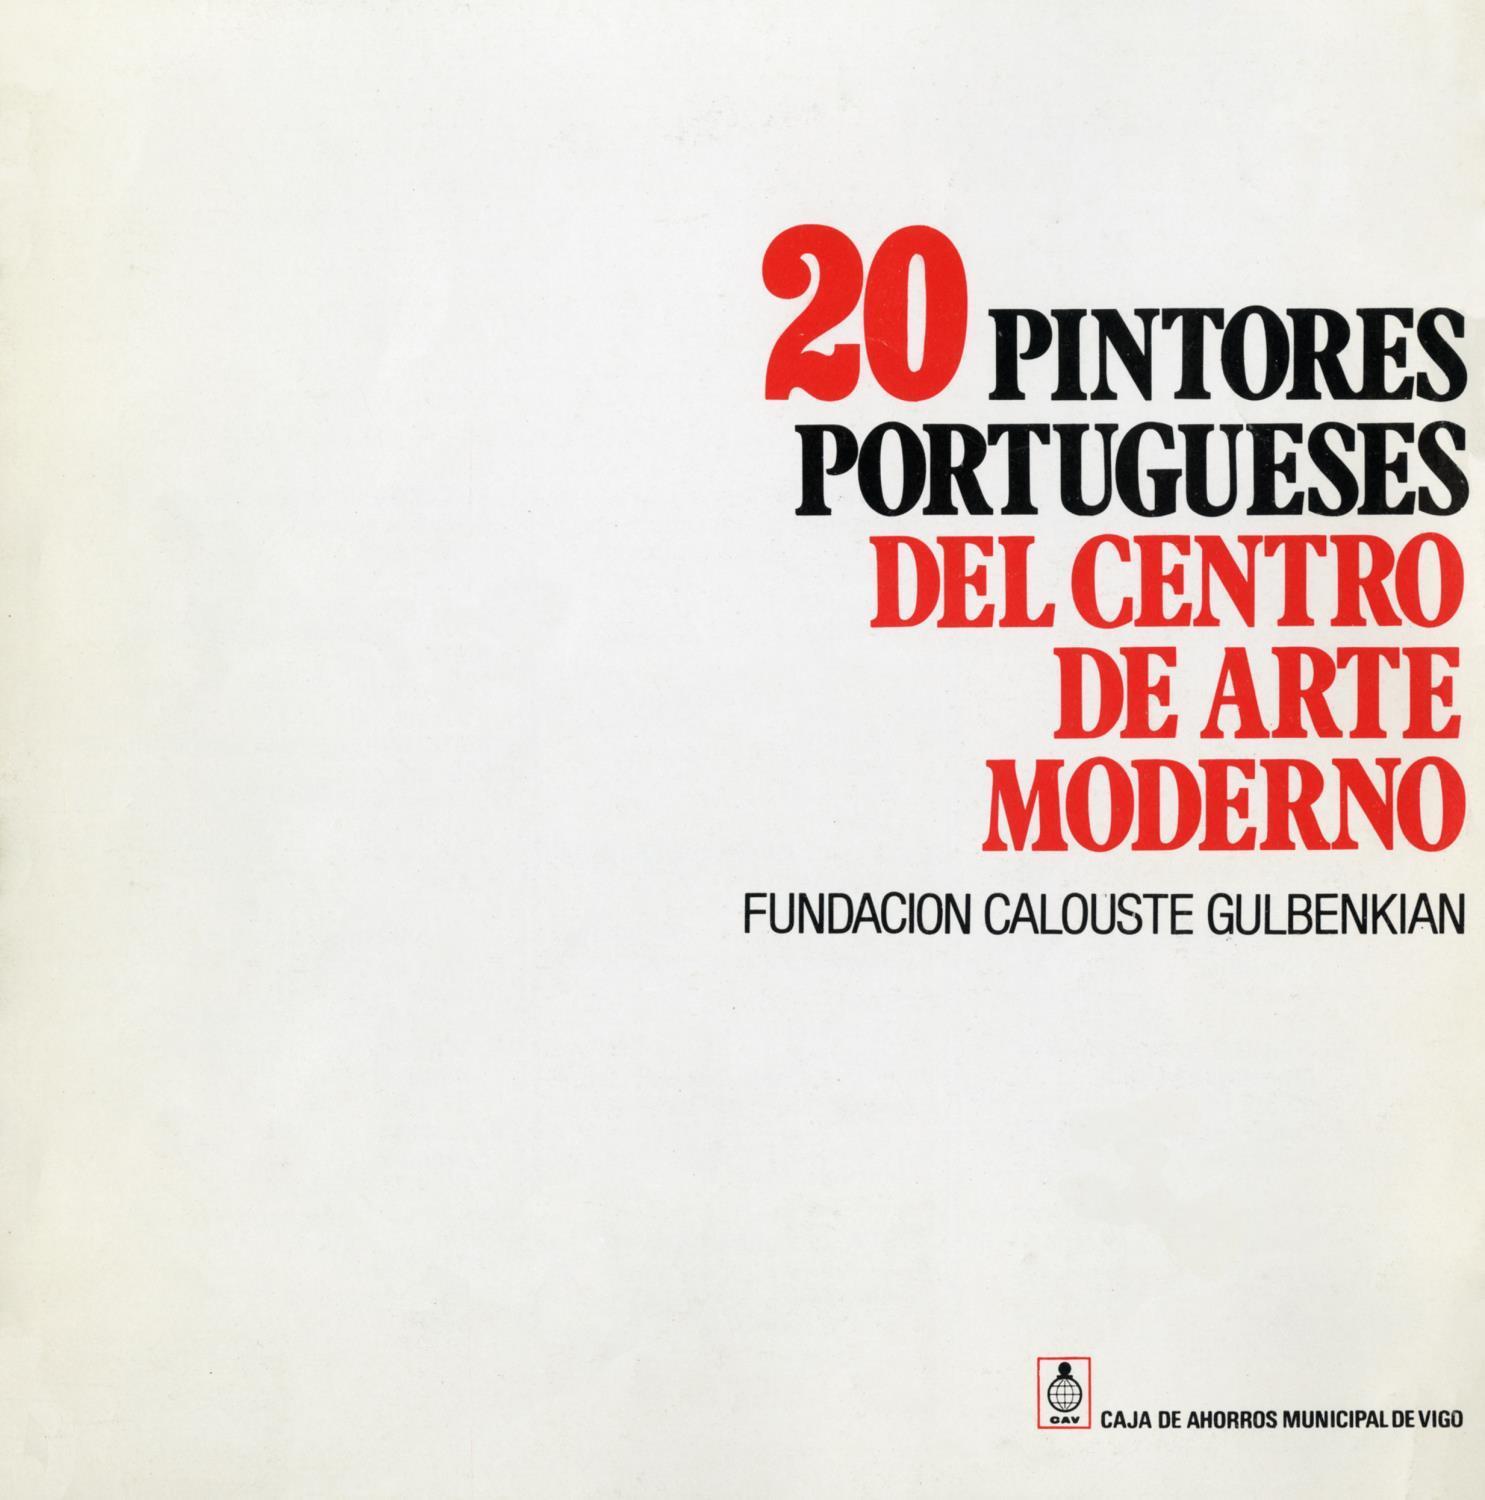 20 Pintores Portugueses del Centro Arte Moderno. Fundación Calouste Gulbenkian